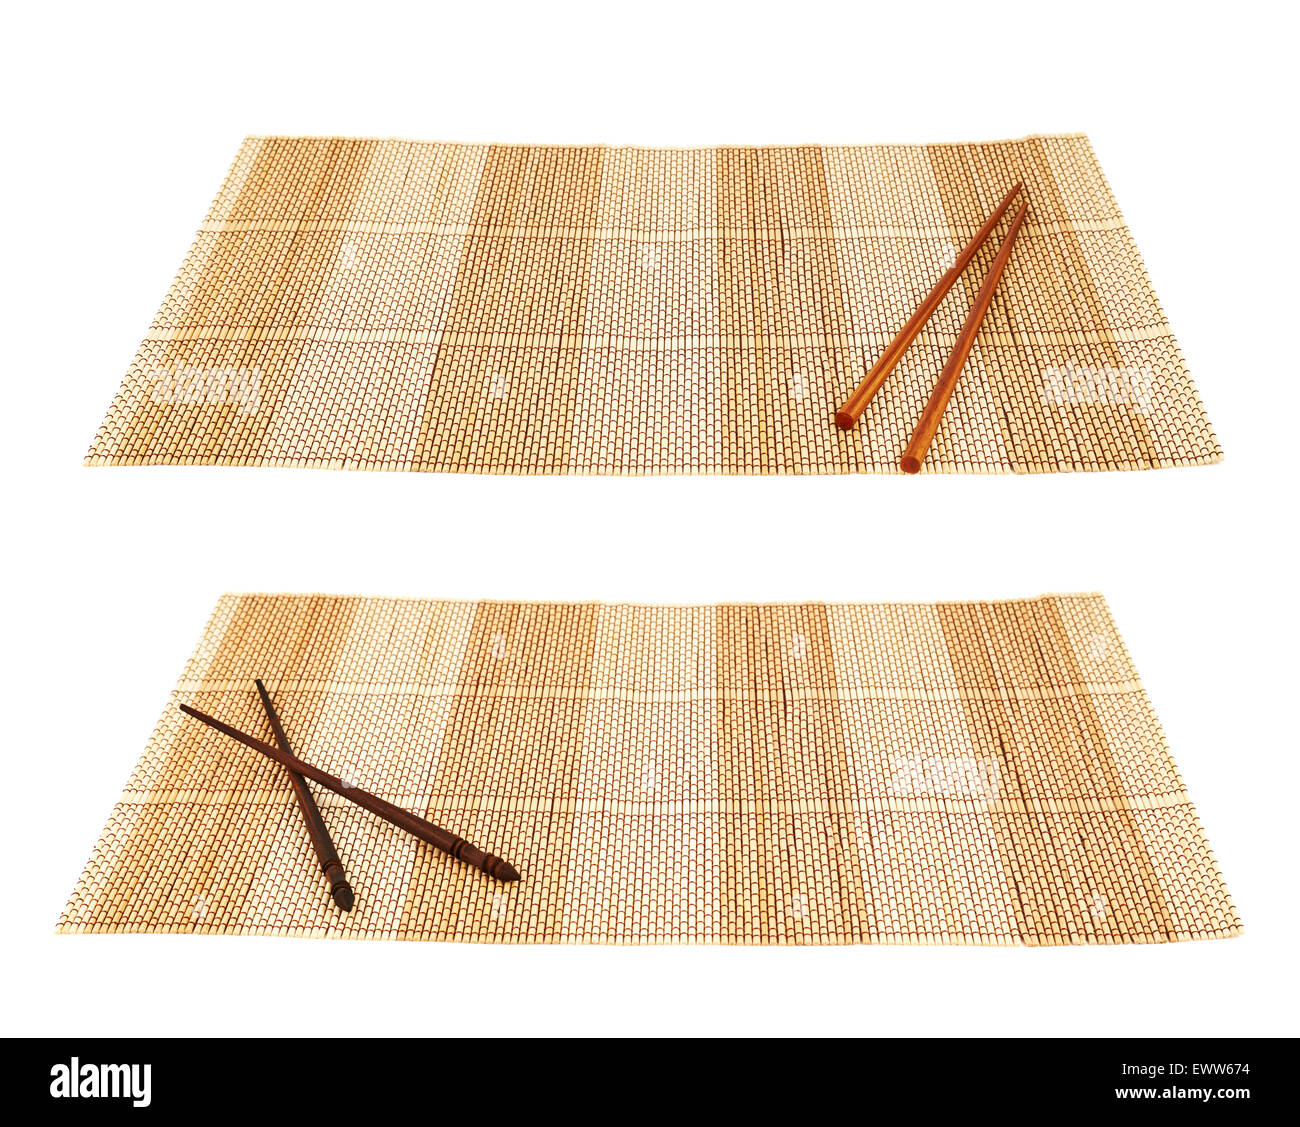 Chopsticks over a bamboo mat Stock Photo